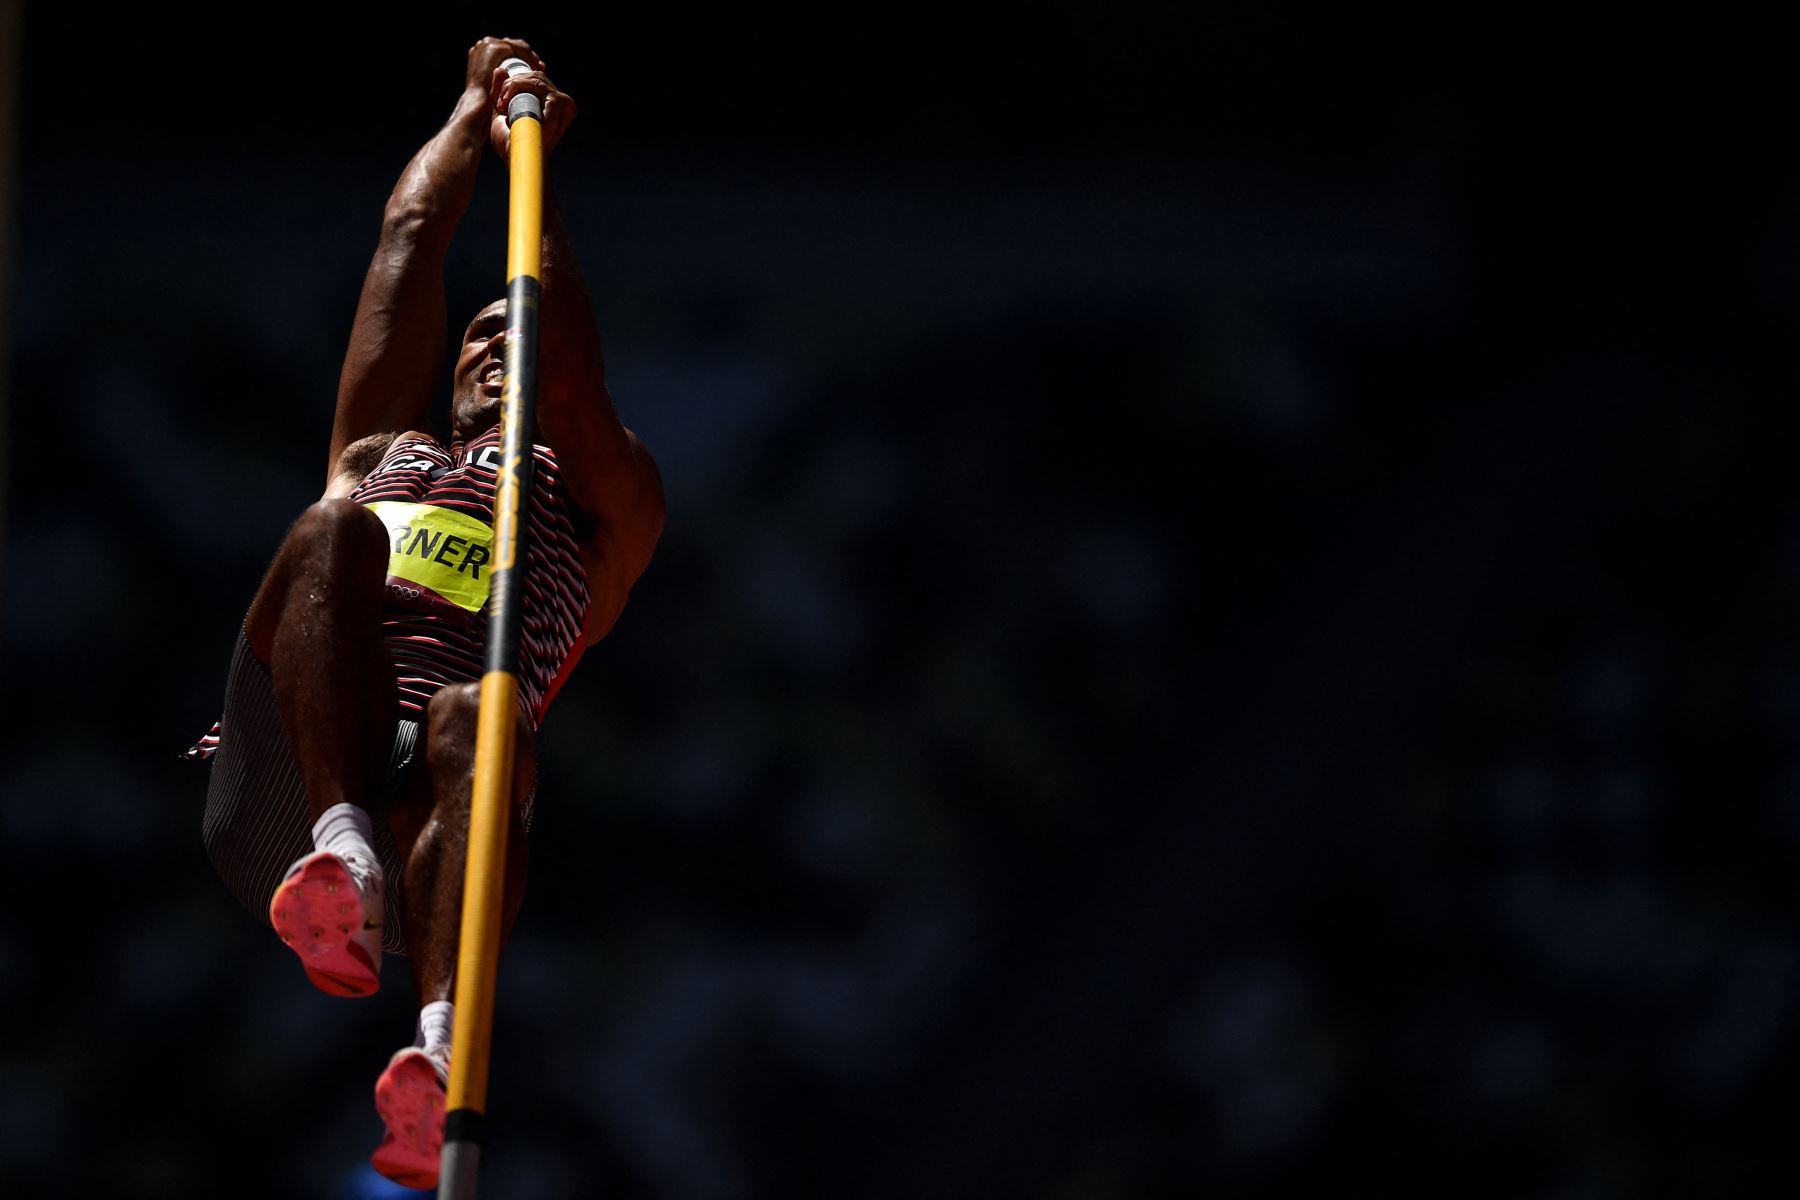 Damian Warner de Canadá compite en el salto con pértiga de decatlón masculino durante los Juegos Olímpicos de Tokio 2020 en el Estadio Olímpico de Tokio. Foto:AFP